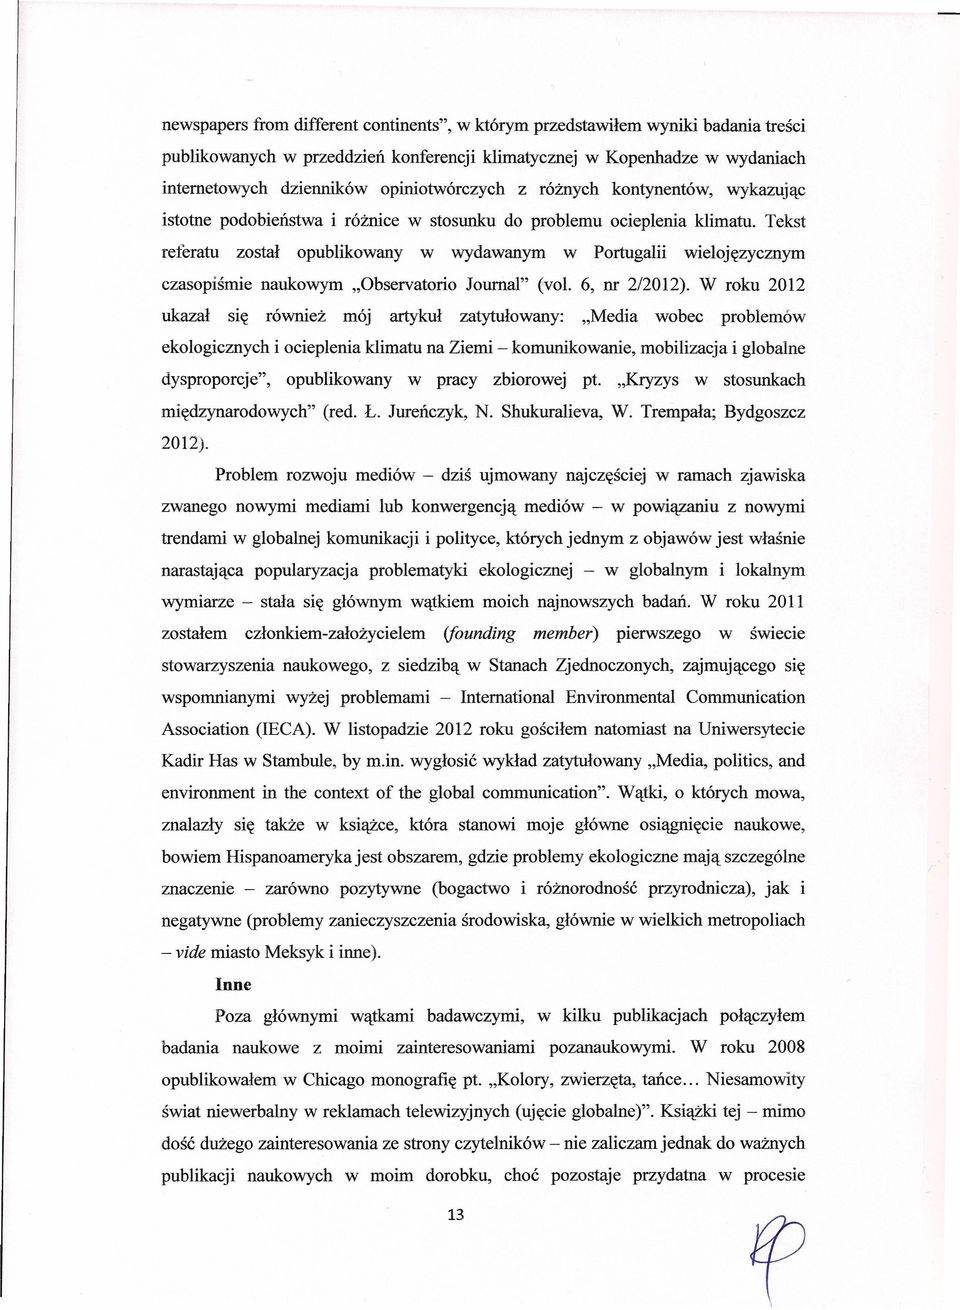 Tekst referatu został opublikowany w wydawanym w Portugalii wielojęzycznym czasopiśmie naukowym "Observatorio Joumal" (vol. 6, nr 2/2012).